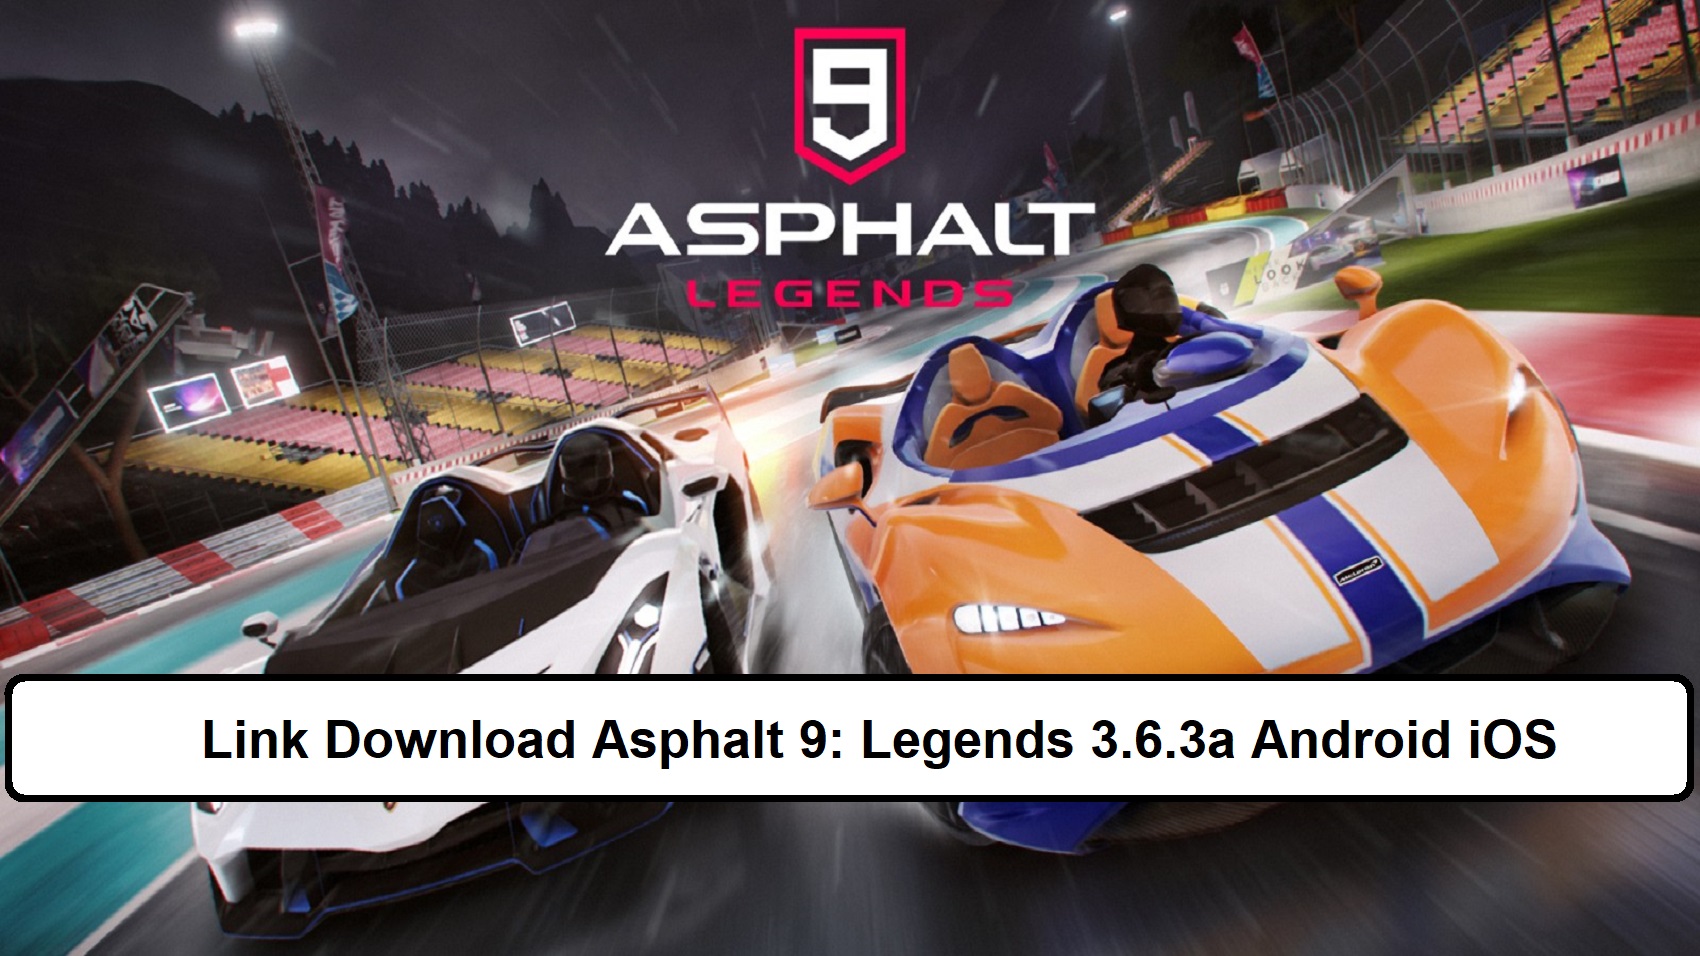 Link Download Asphalt 9: Legends 3.6.3a Android iOS